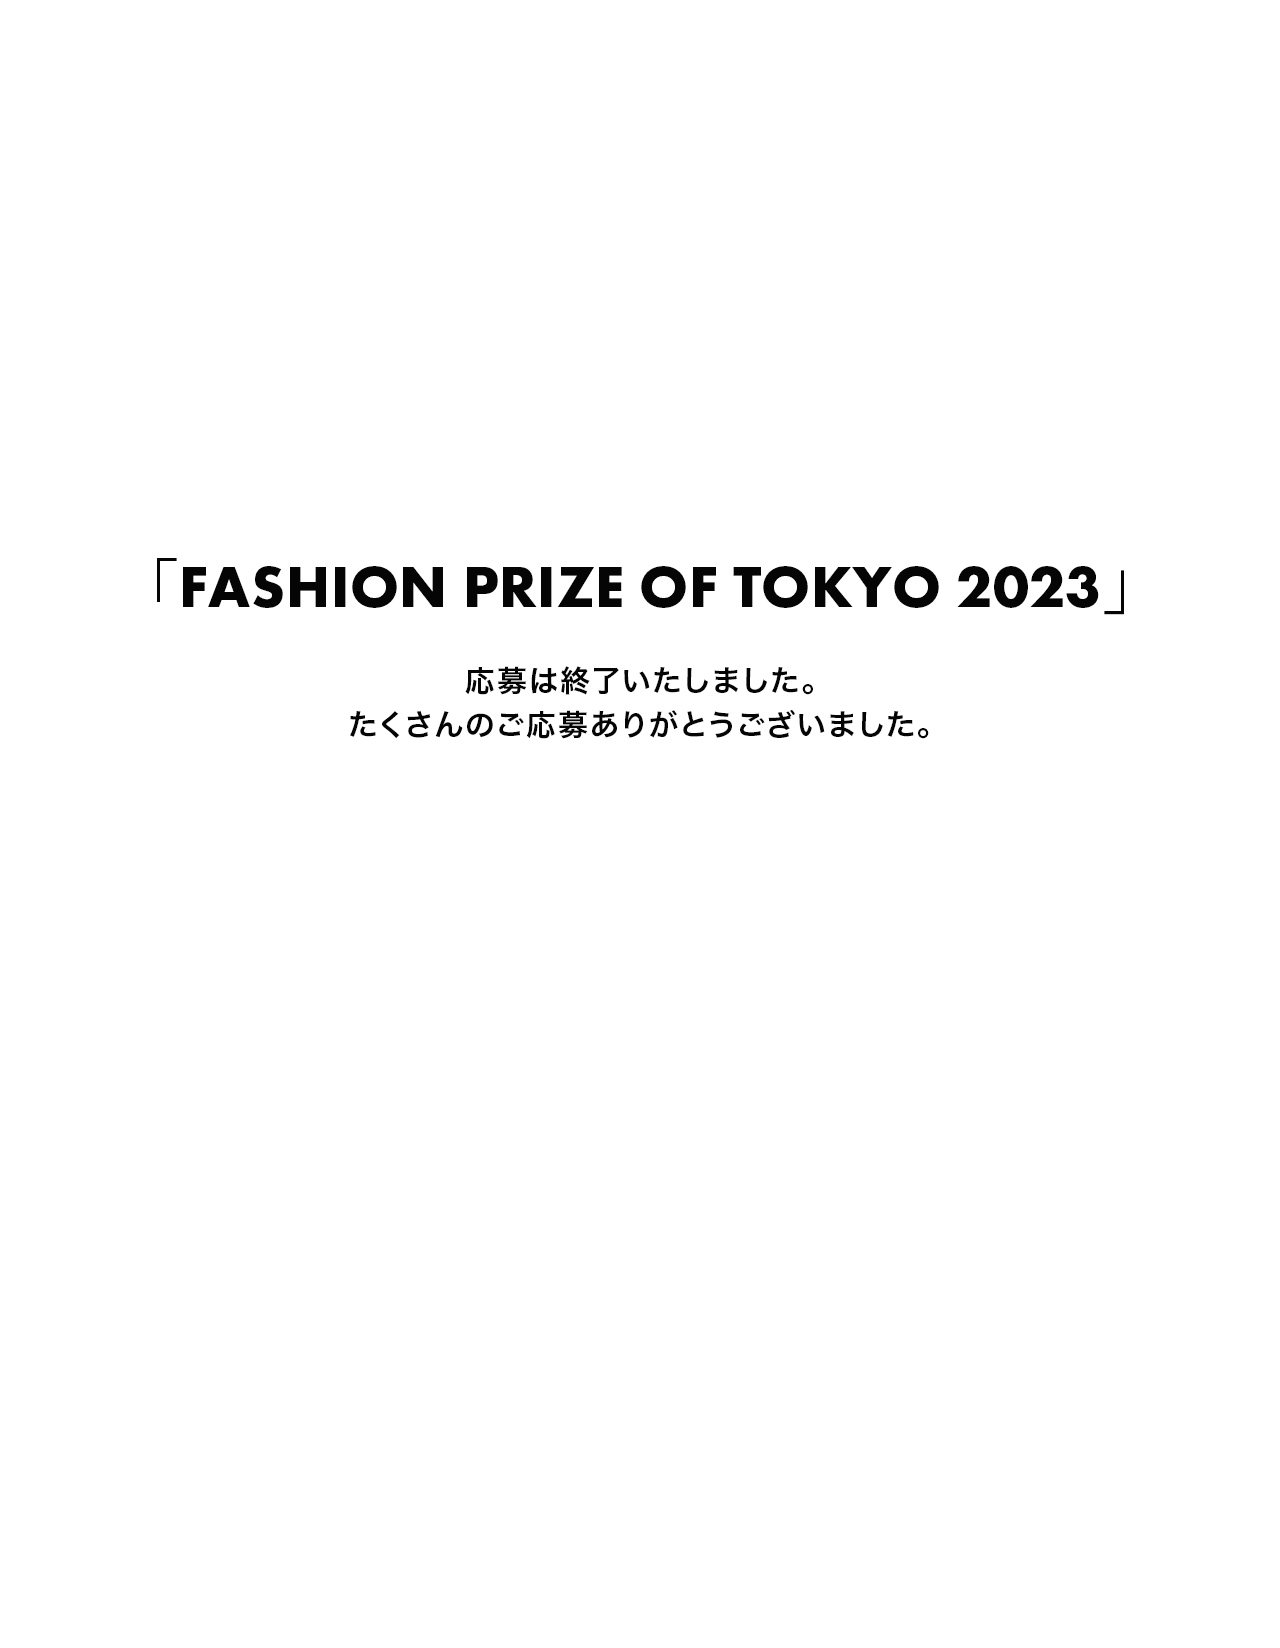 「FASHION PRIZE OF TOKYO 2023」募集終了